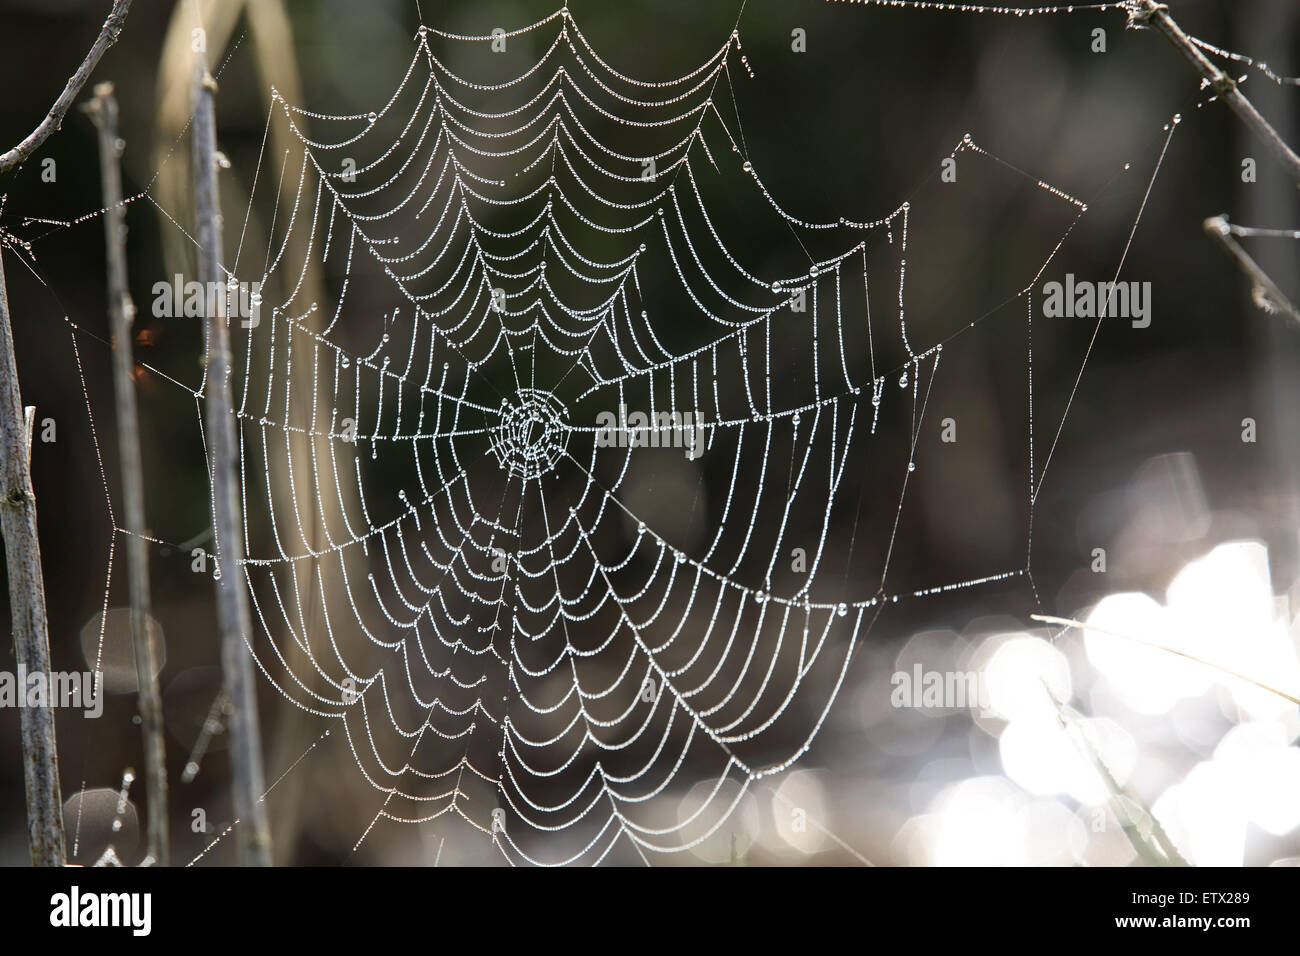 NLD, the Netherlands, spiders web with dew drops.  NLD, Niederlande, Spinnennetz mit Tautropfen. Stock Photo